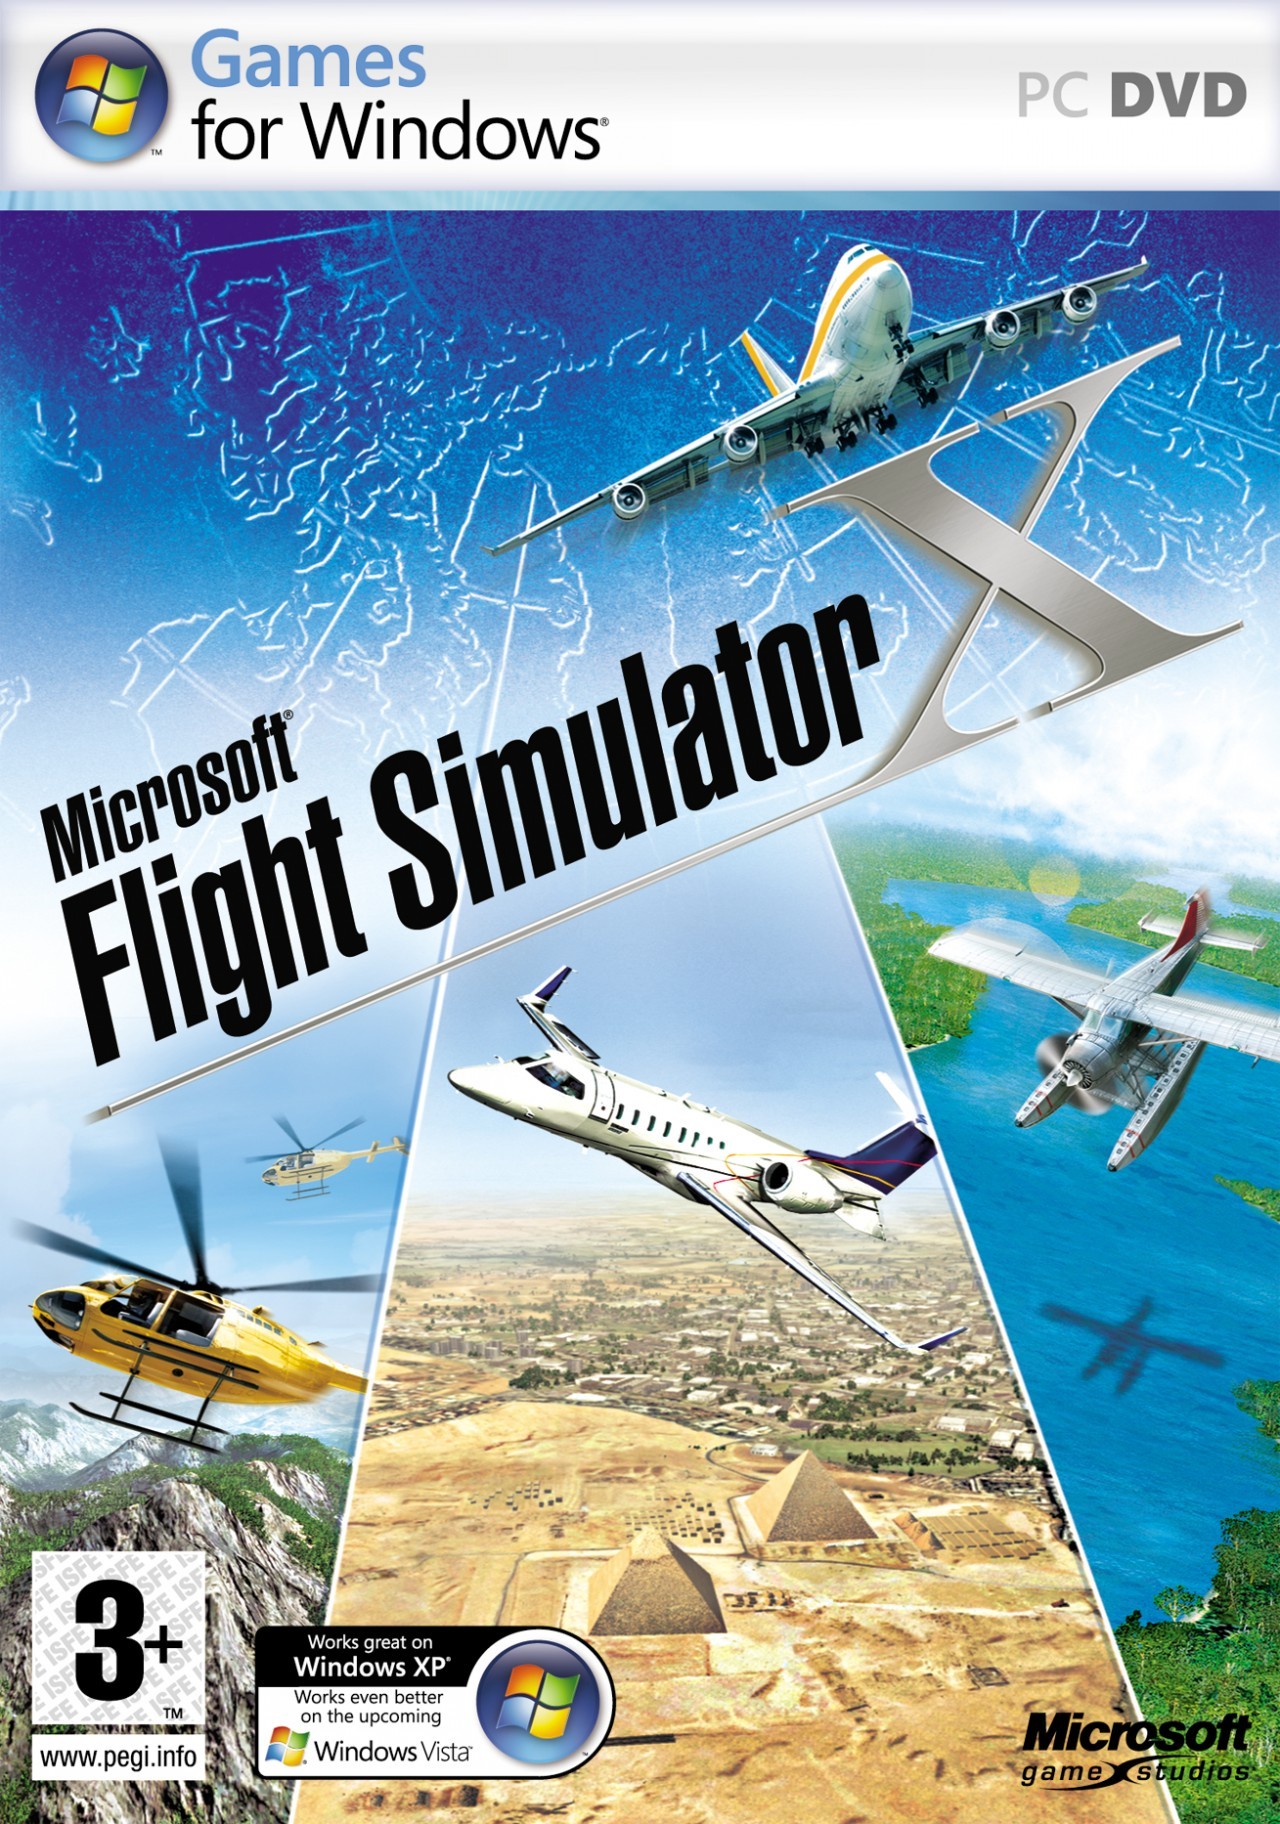 flight simulator games for mac download free